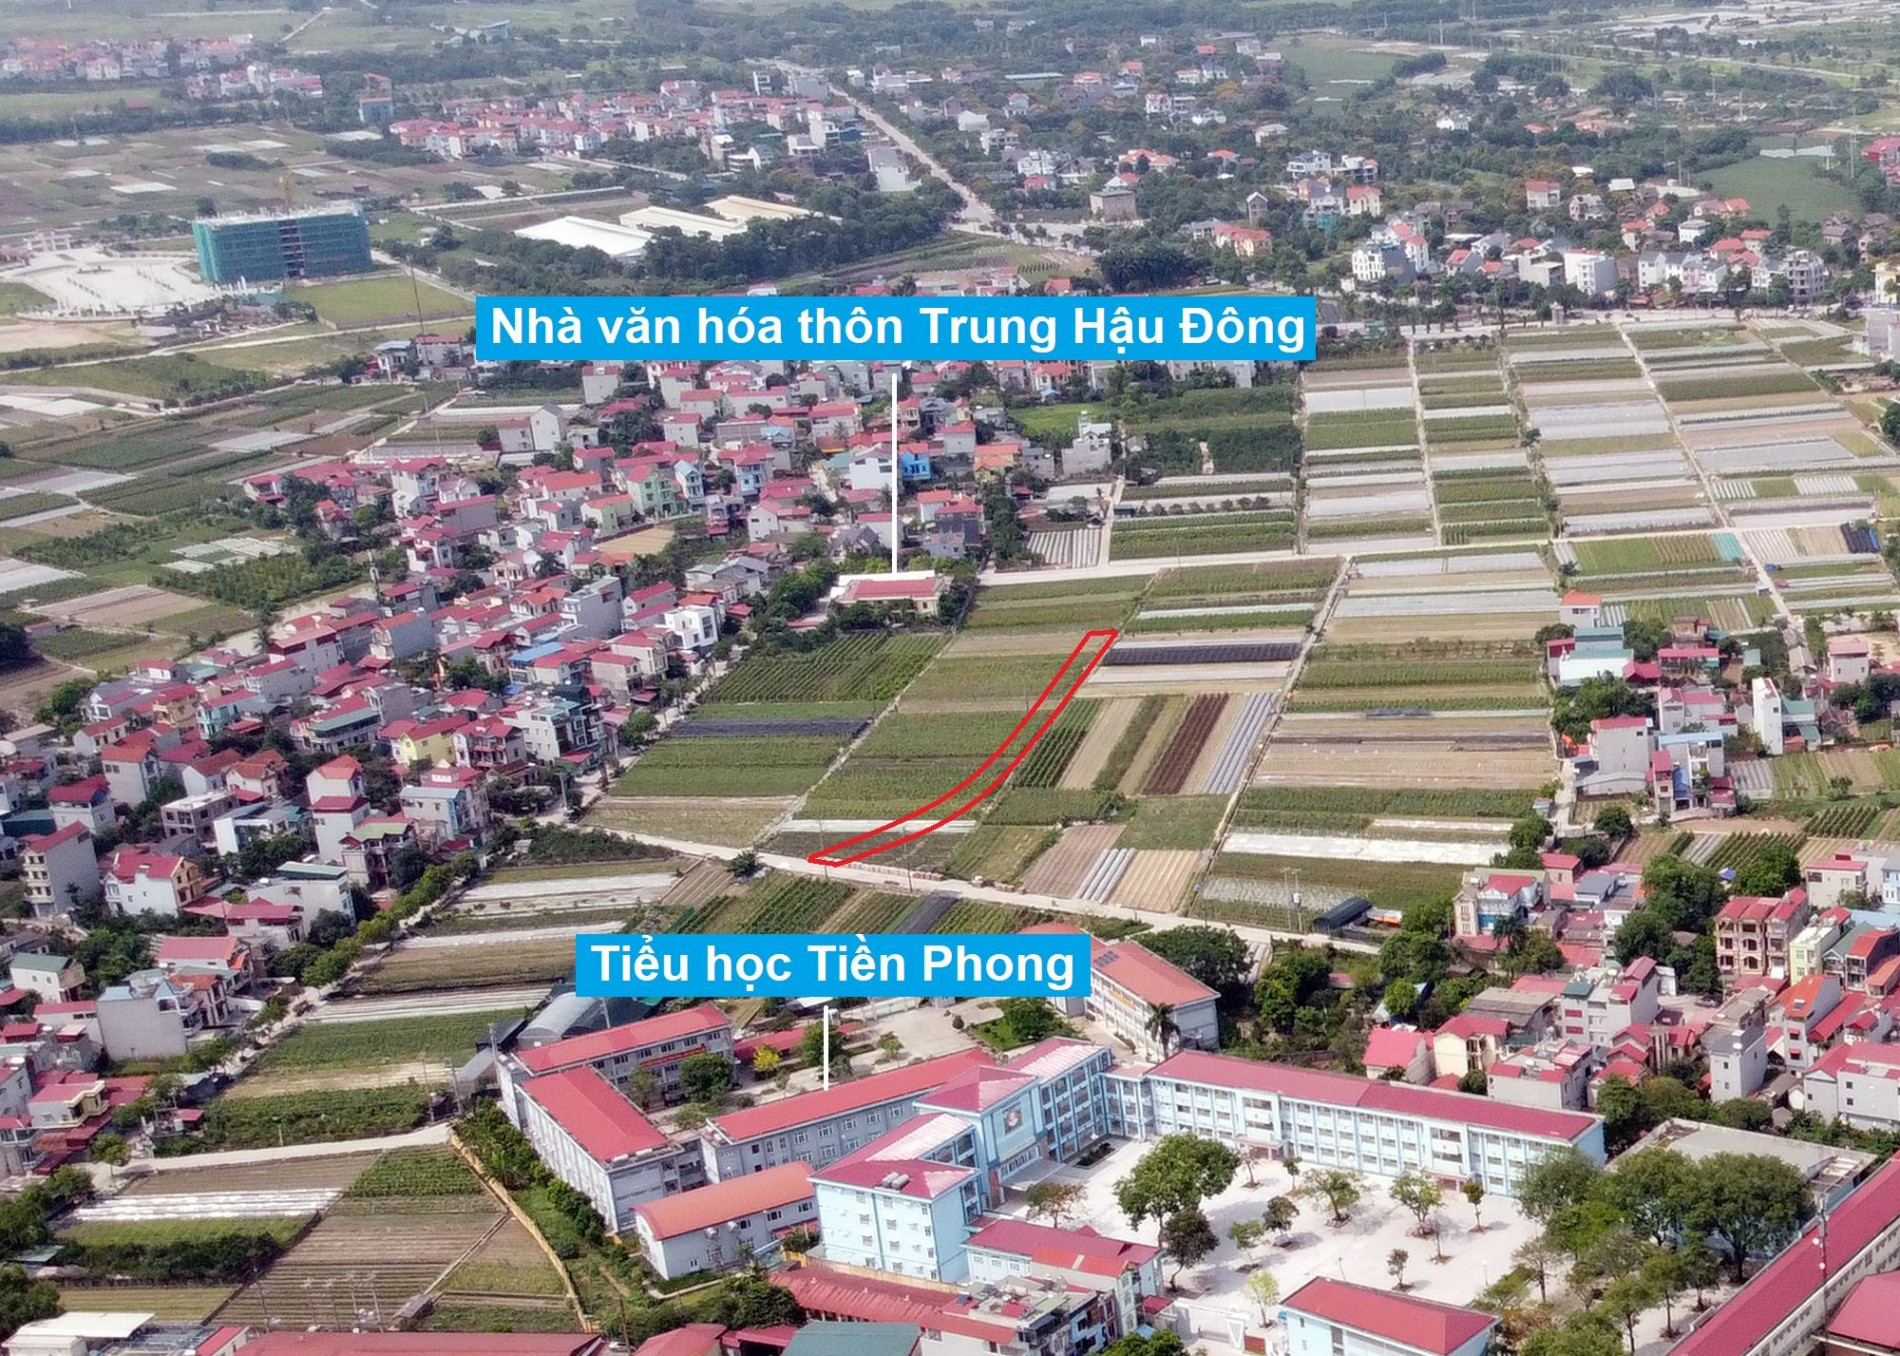 Đường sẽ mở theo quy hoạch ở xã Tiền Phong, Mê Linh, Hà Nội (phần 1)